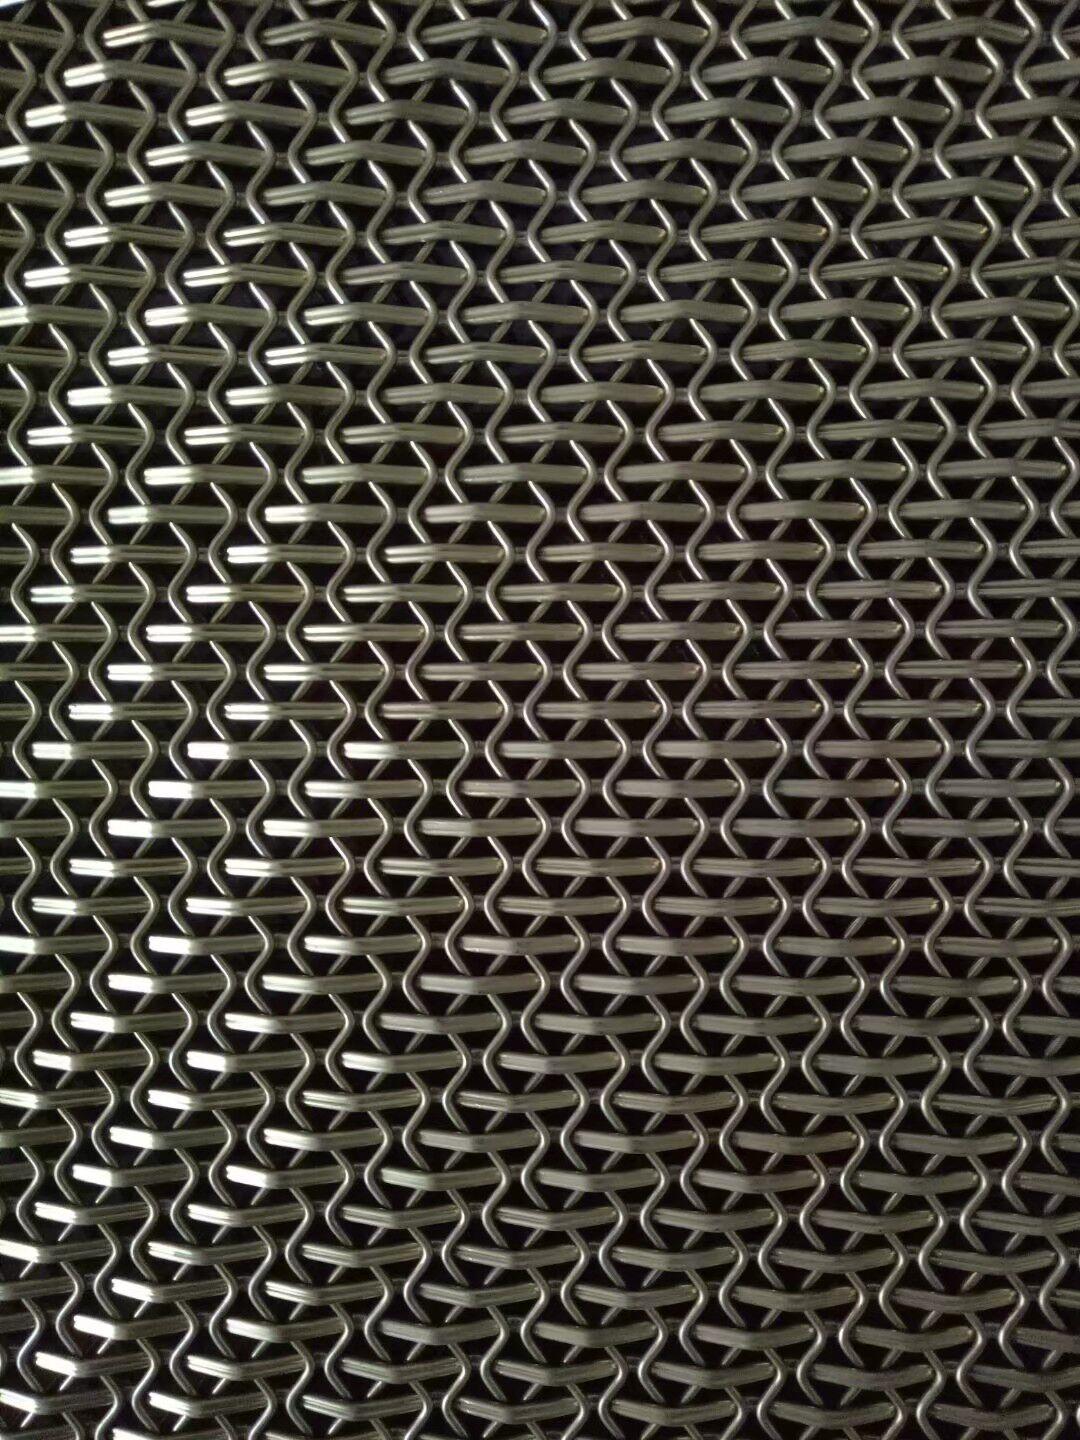 玻璃幕墙金属网-金属幕墙编织装饰网-吊顶金属网